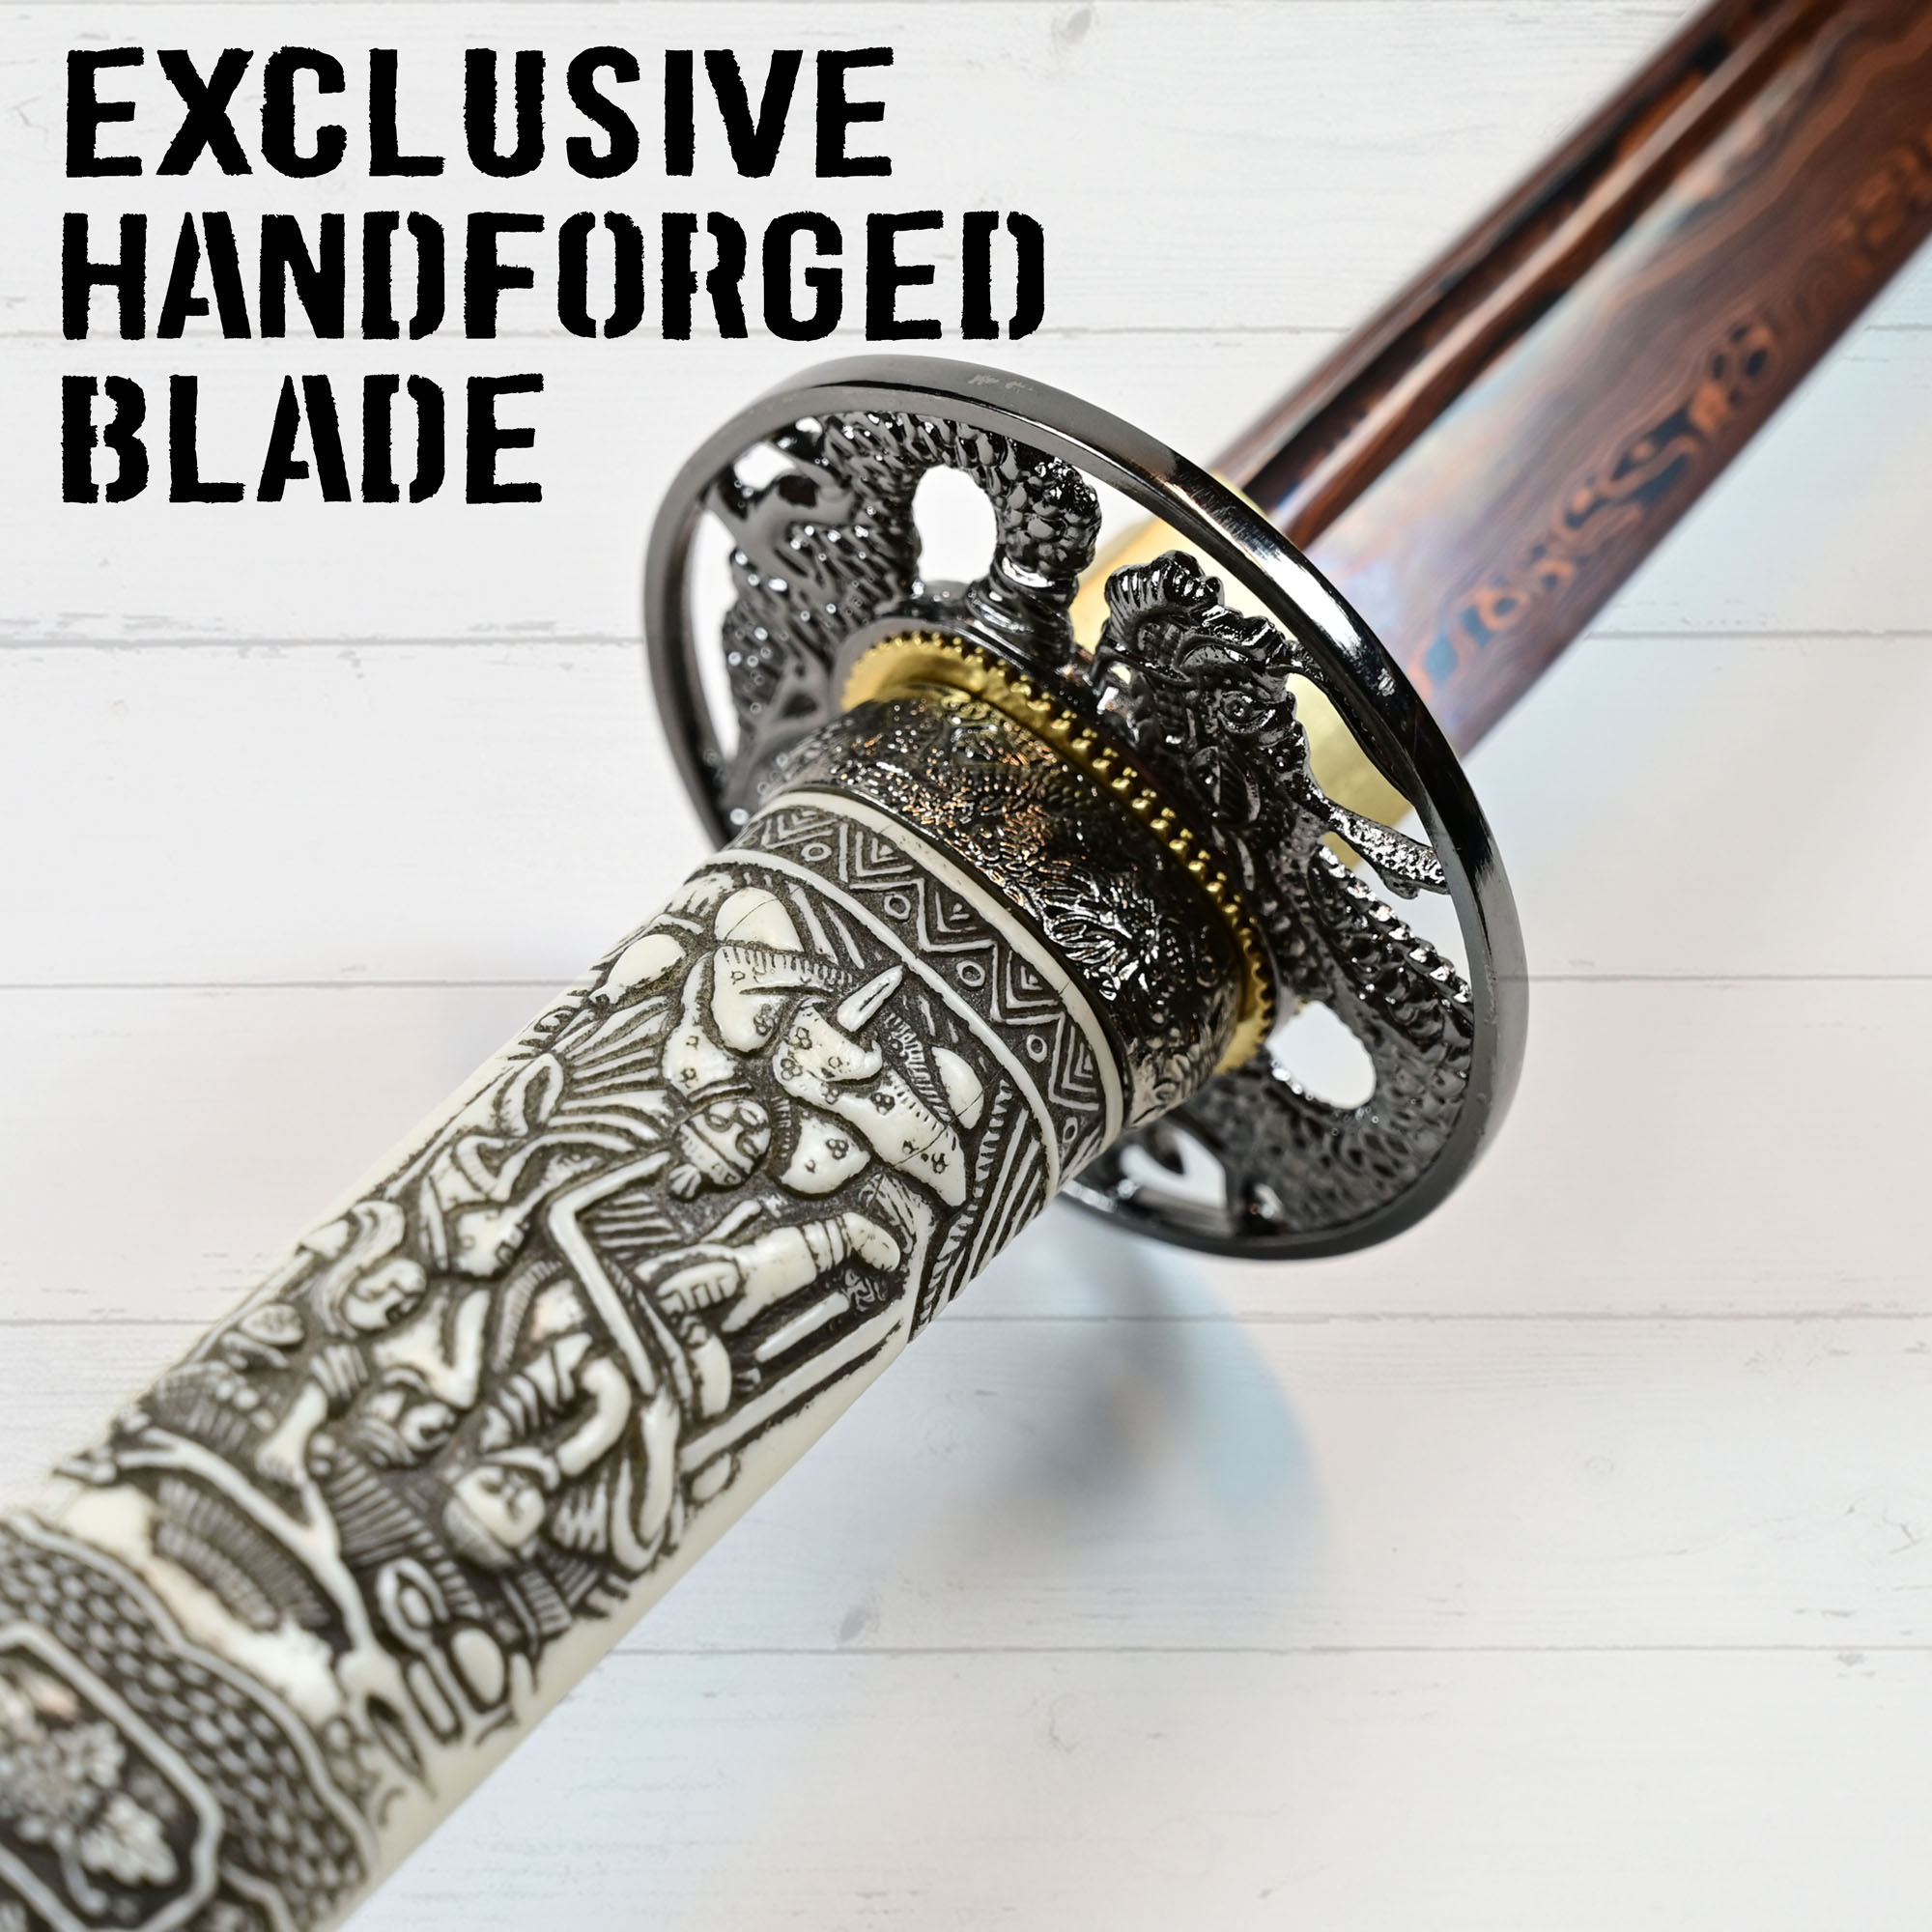 Highlander - Duncan MacLeod Katana - handforged & folded, Set - Blood Damascus Edition